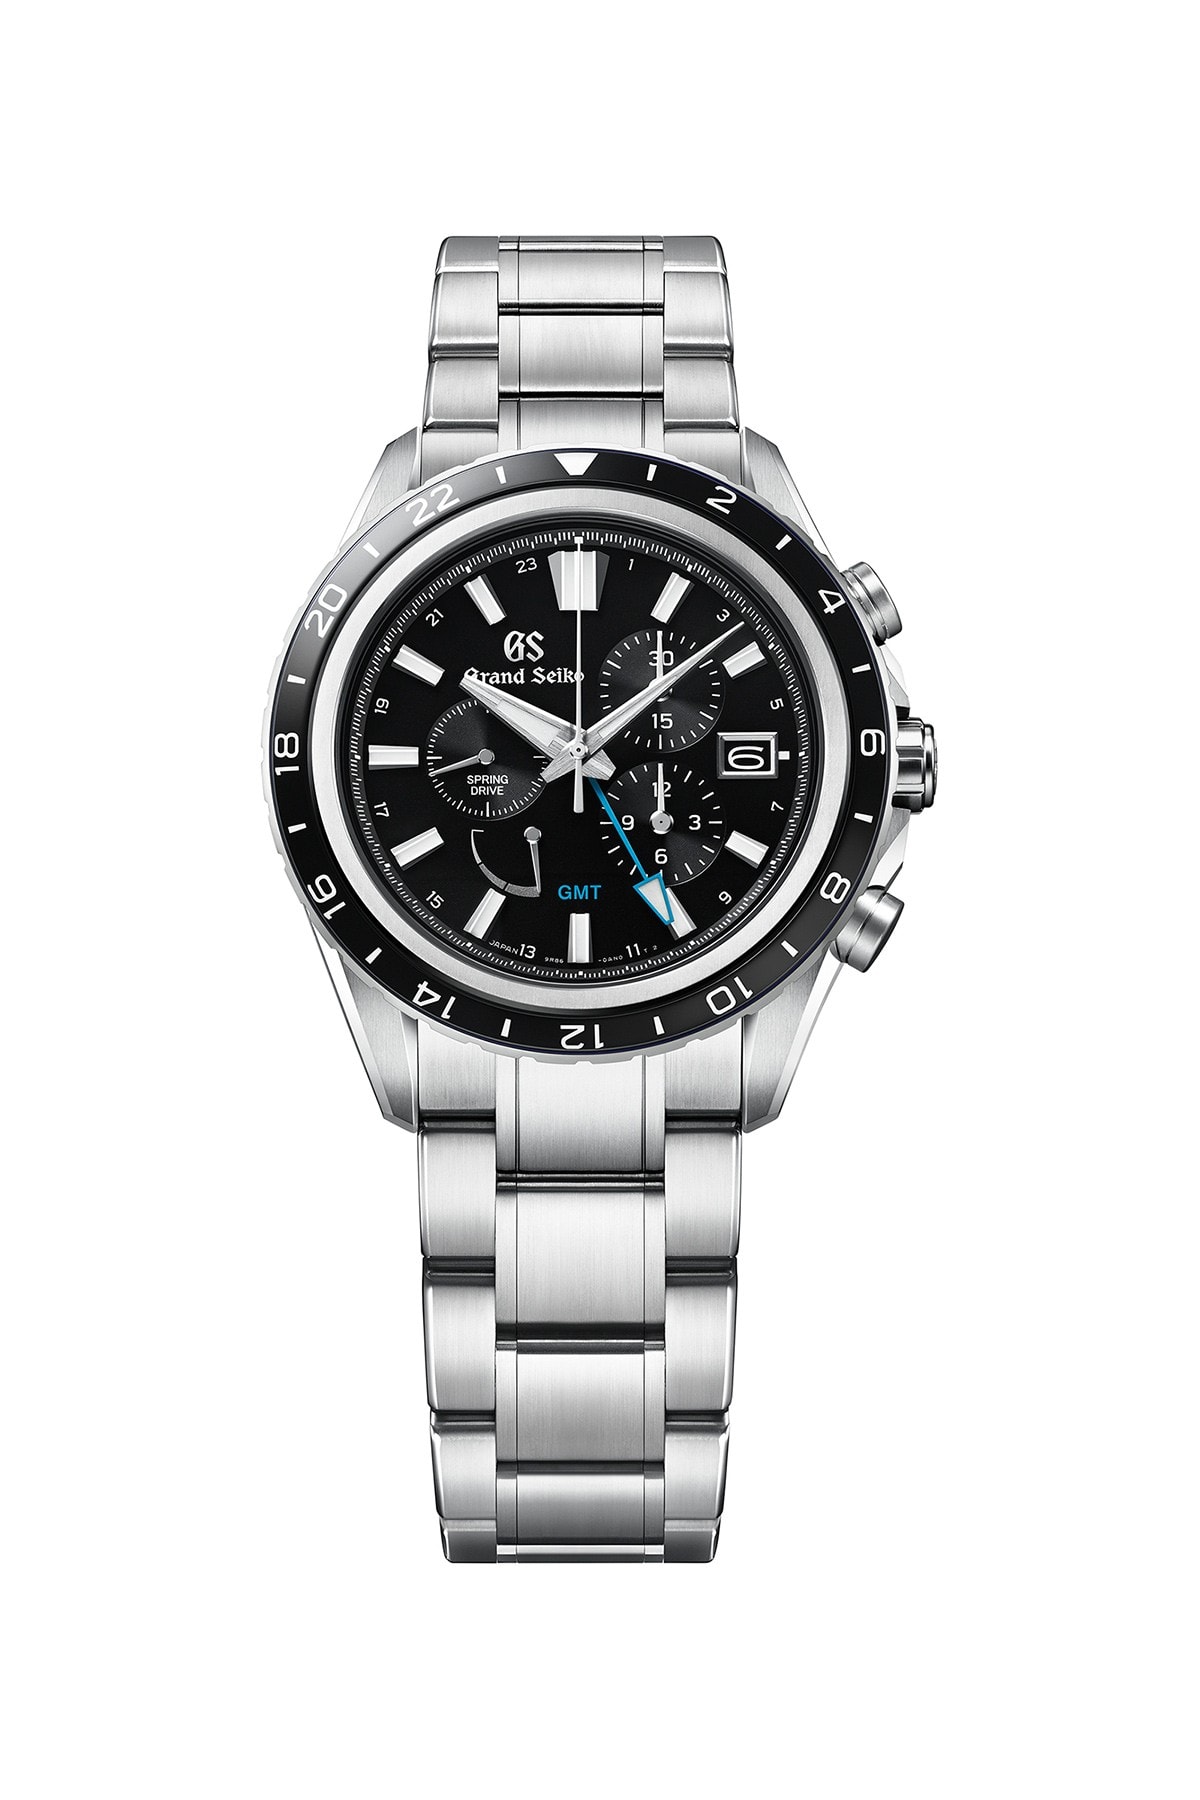 Grand Seiko 發表 2022 年 7 款腕錶新作